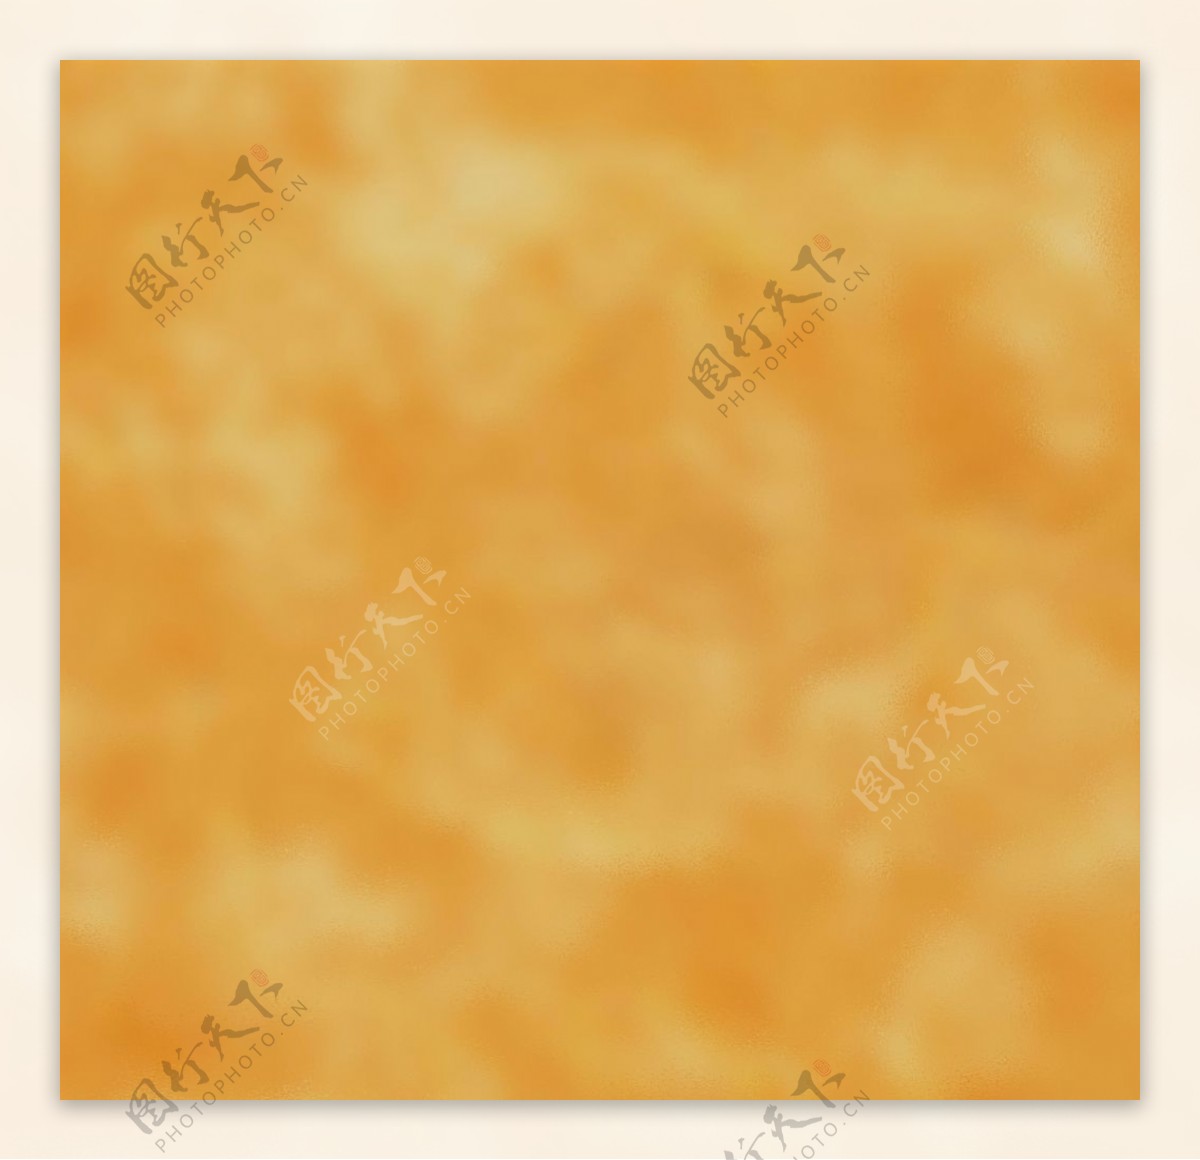 橙色潮流抽象图片